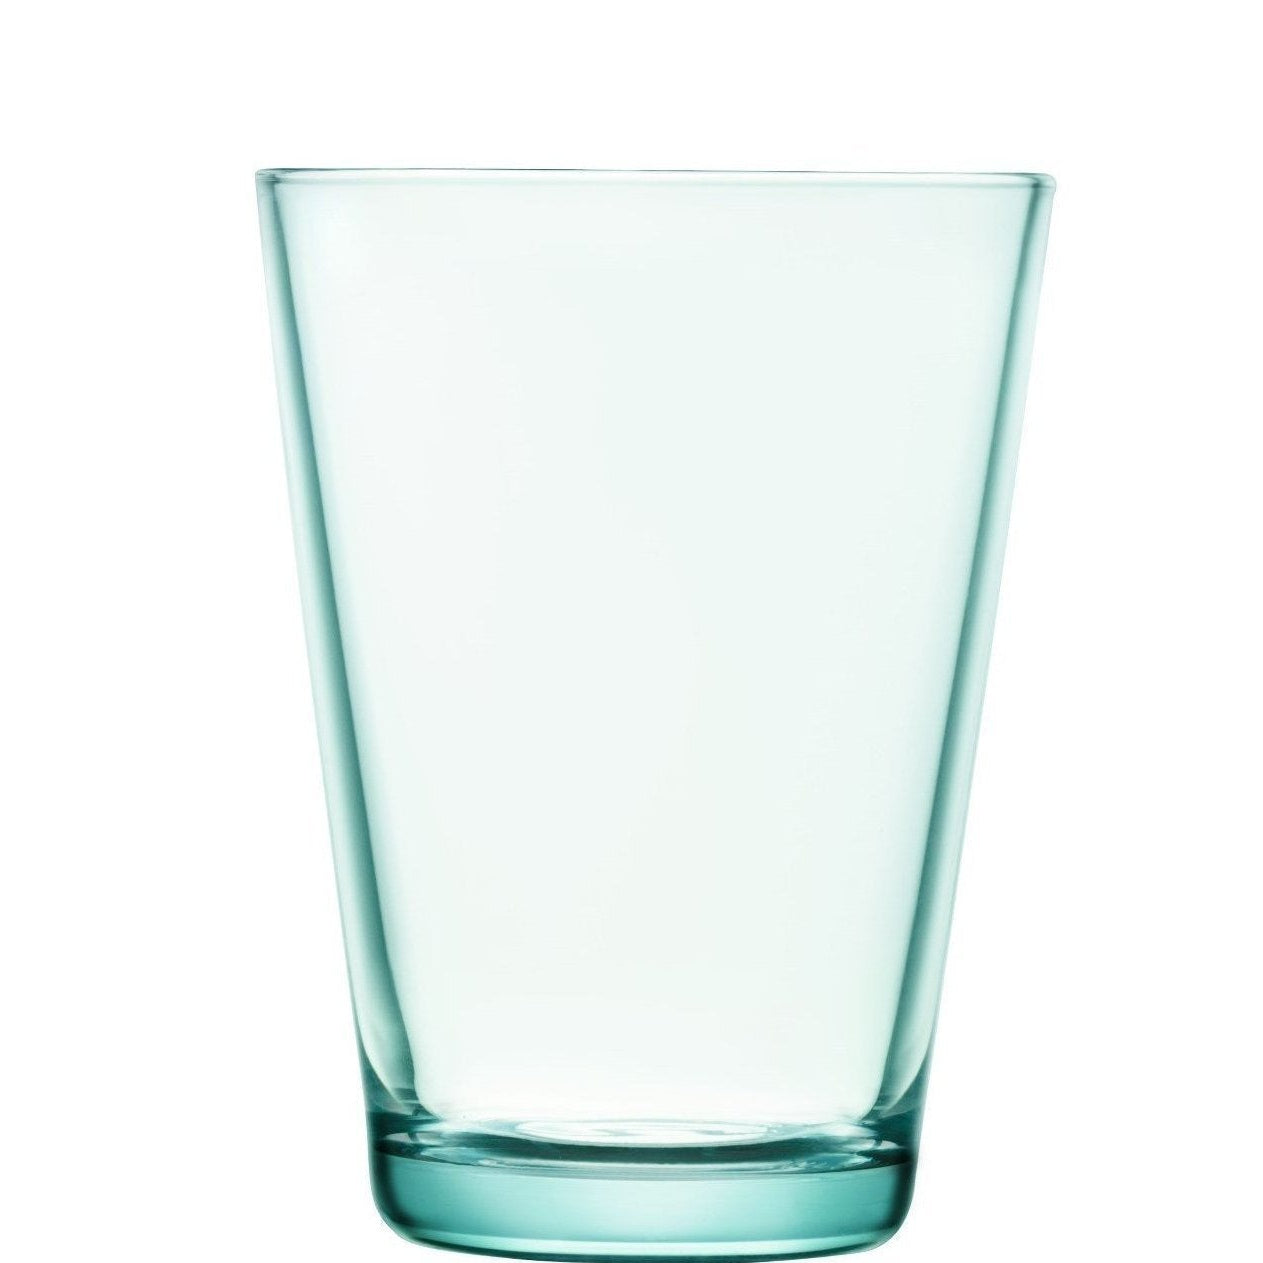 Iittala Kartio Glas Wasser Grün 2pcs, 40cl